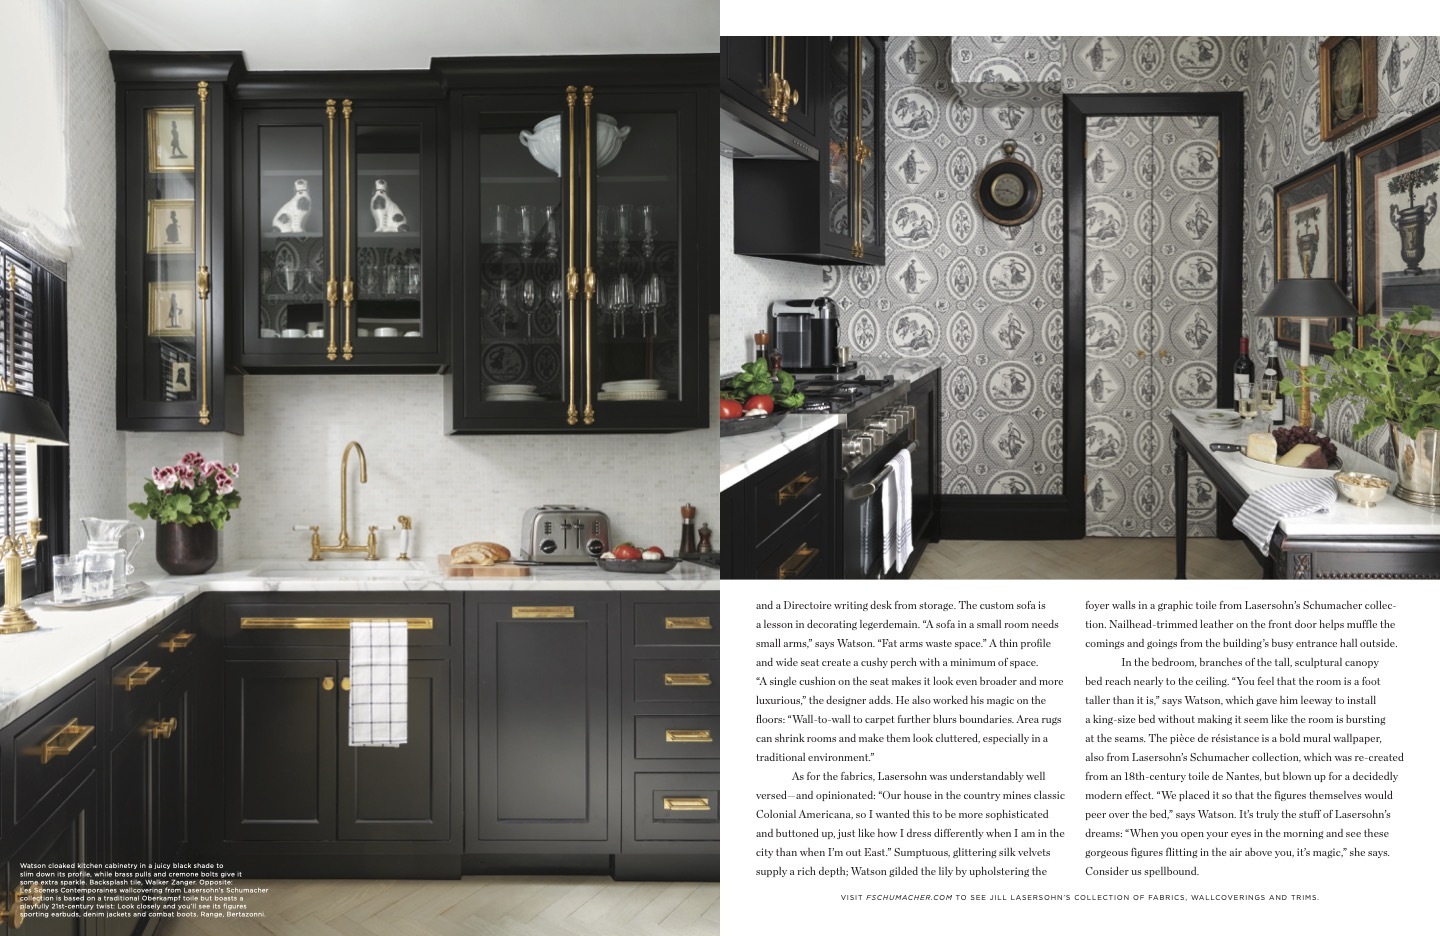 magazine spread showing kitchen design interiors